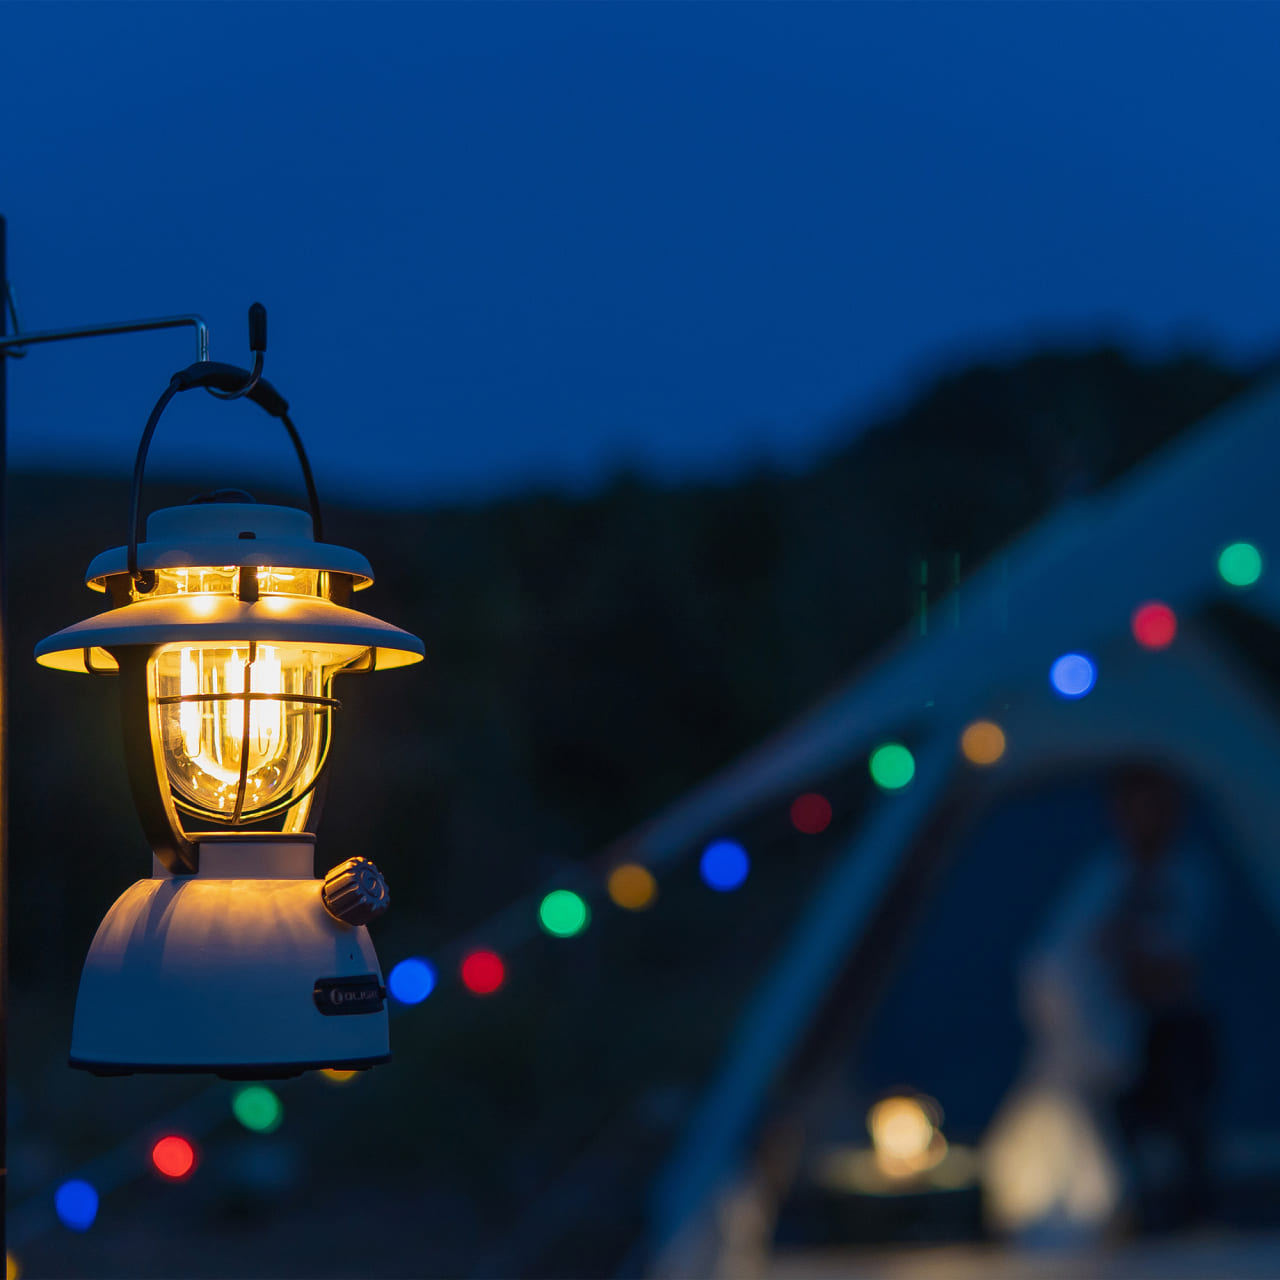 露營裝備清單第 6 項：露營照明